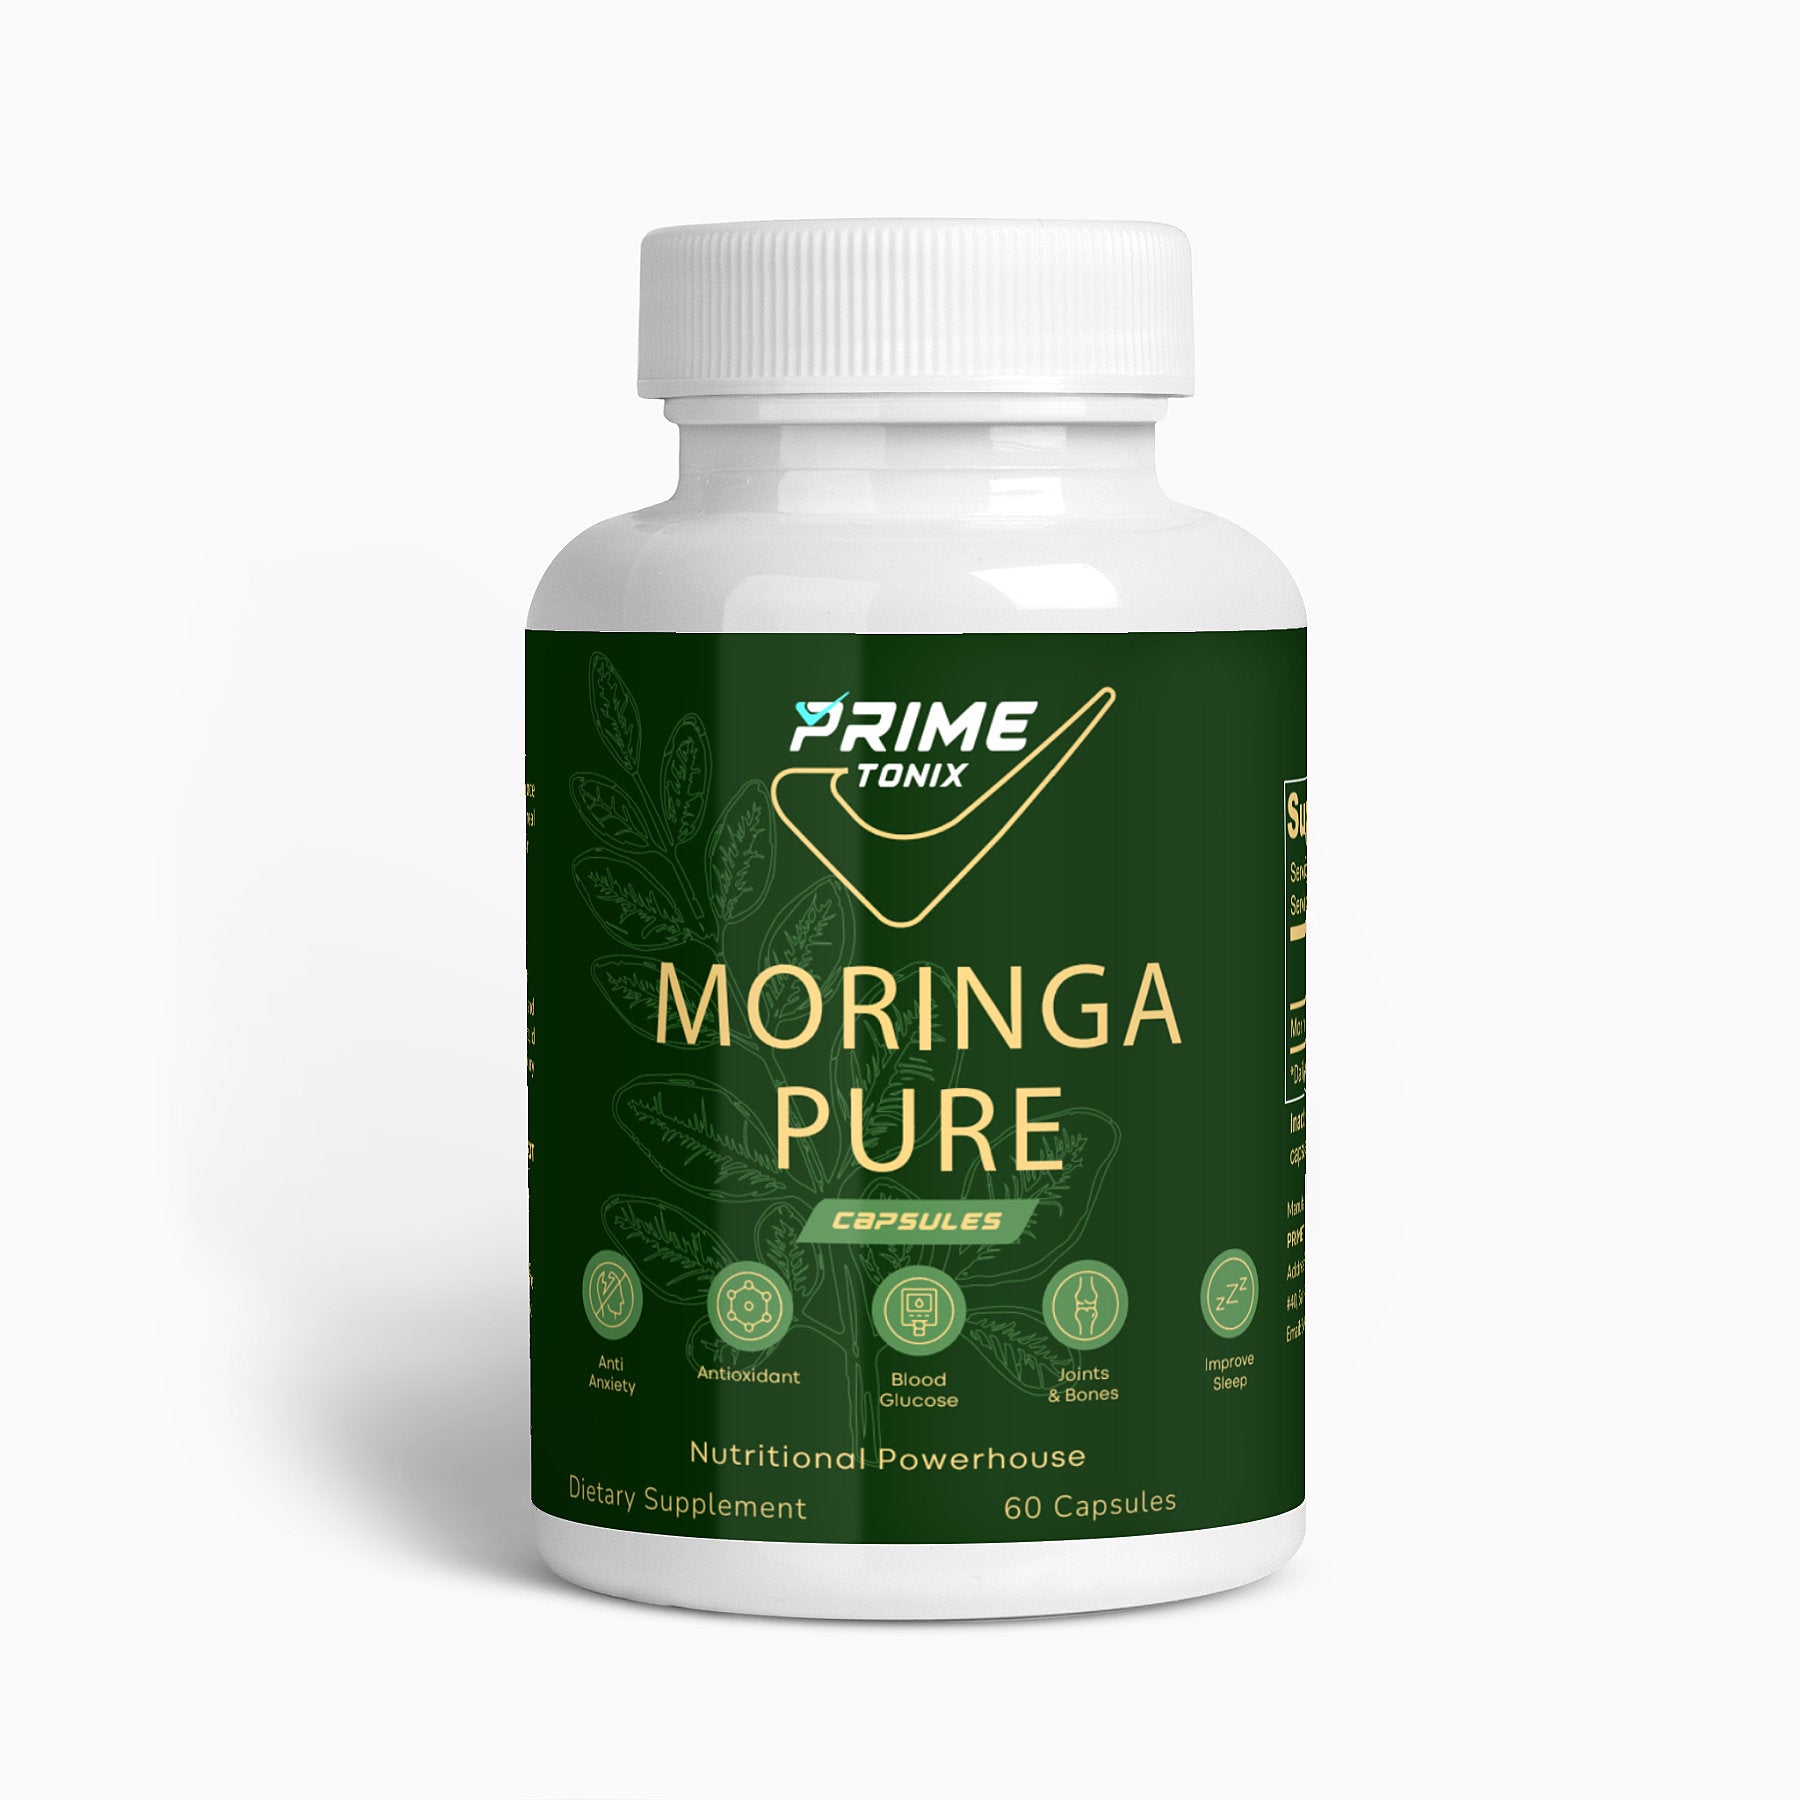 Prime Moringa Pure